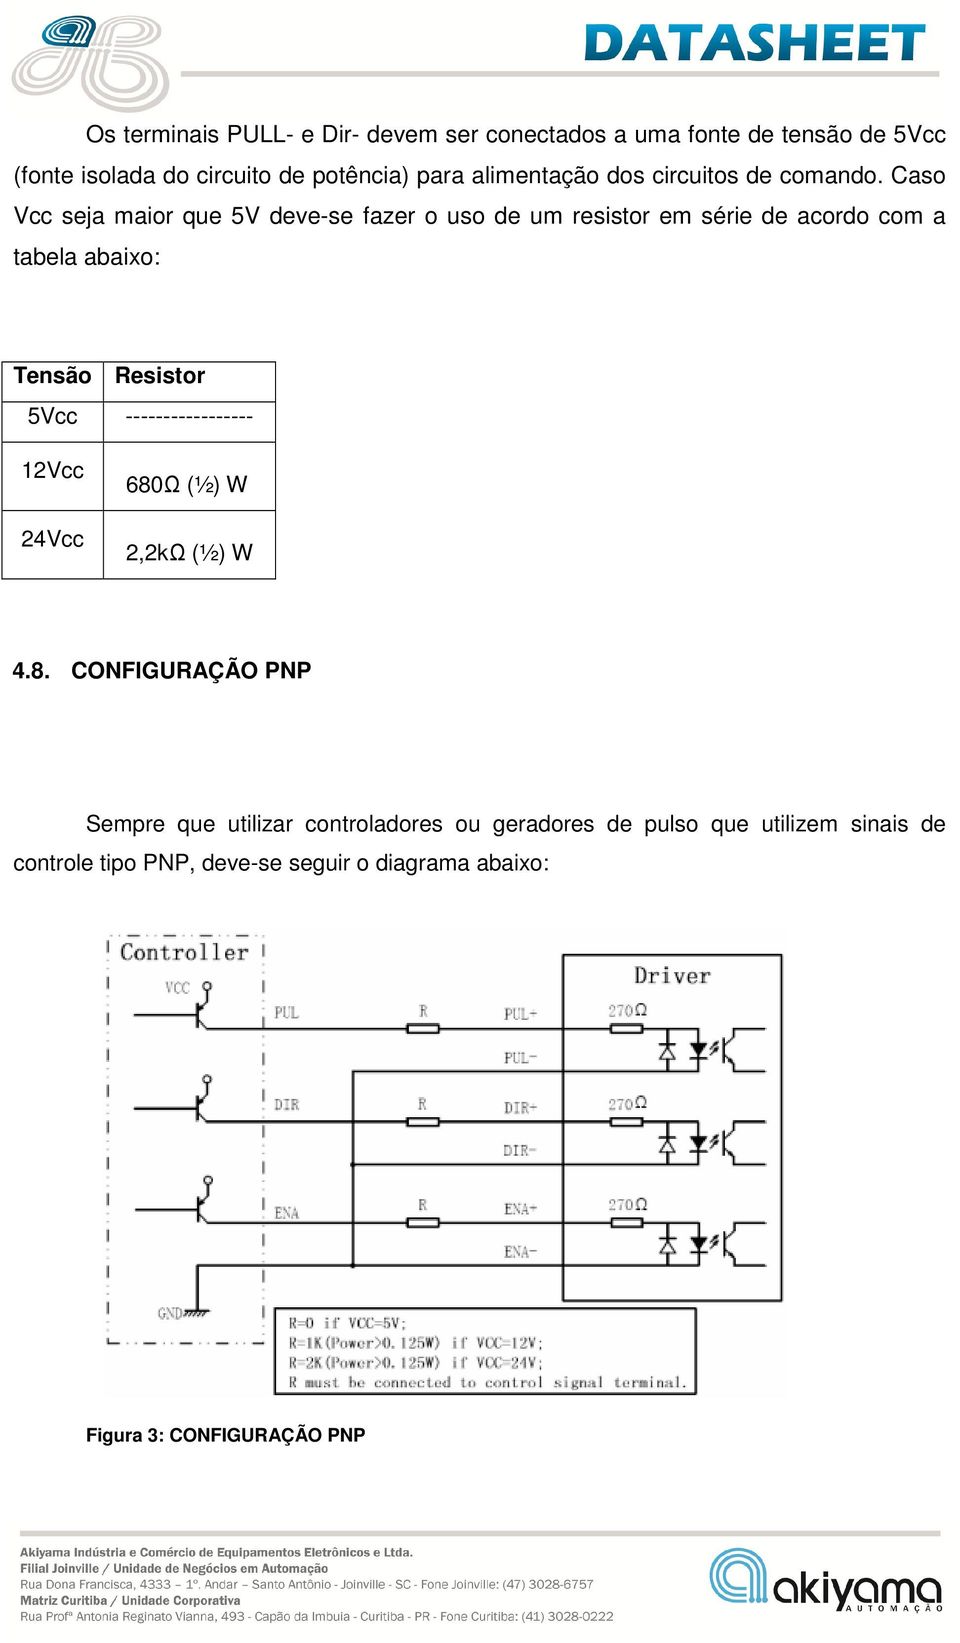 Caso Vcc seja maior que 5V deve-se fazer o uso de um resistor em série de acordo com a tabela abaixo: Tensão Resistor 5Vcc